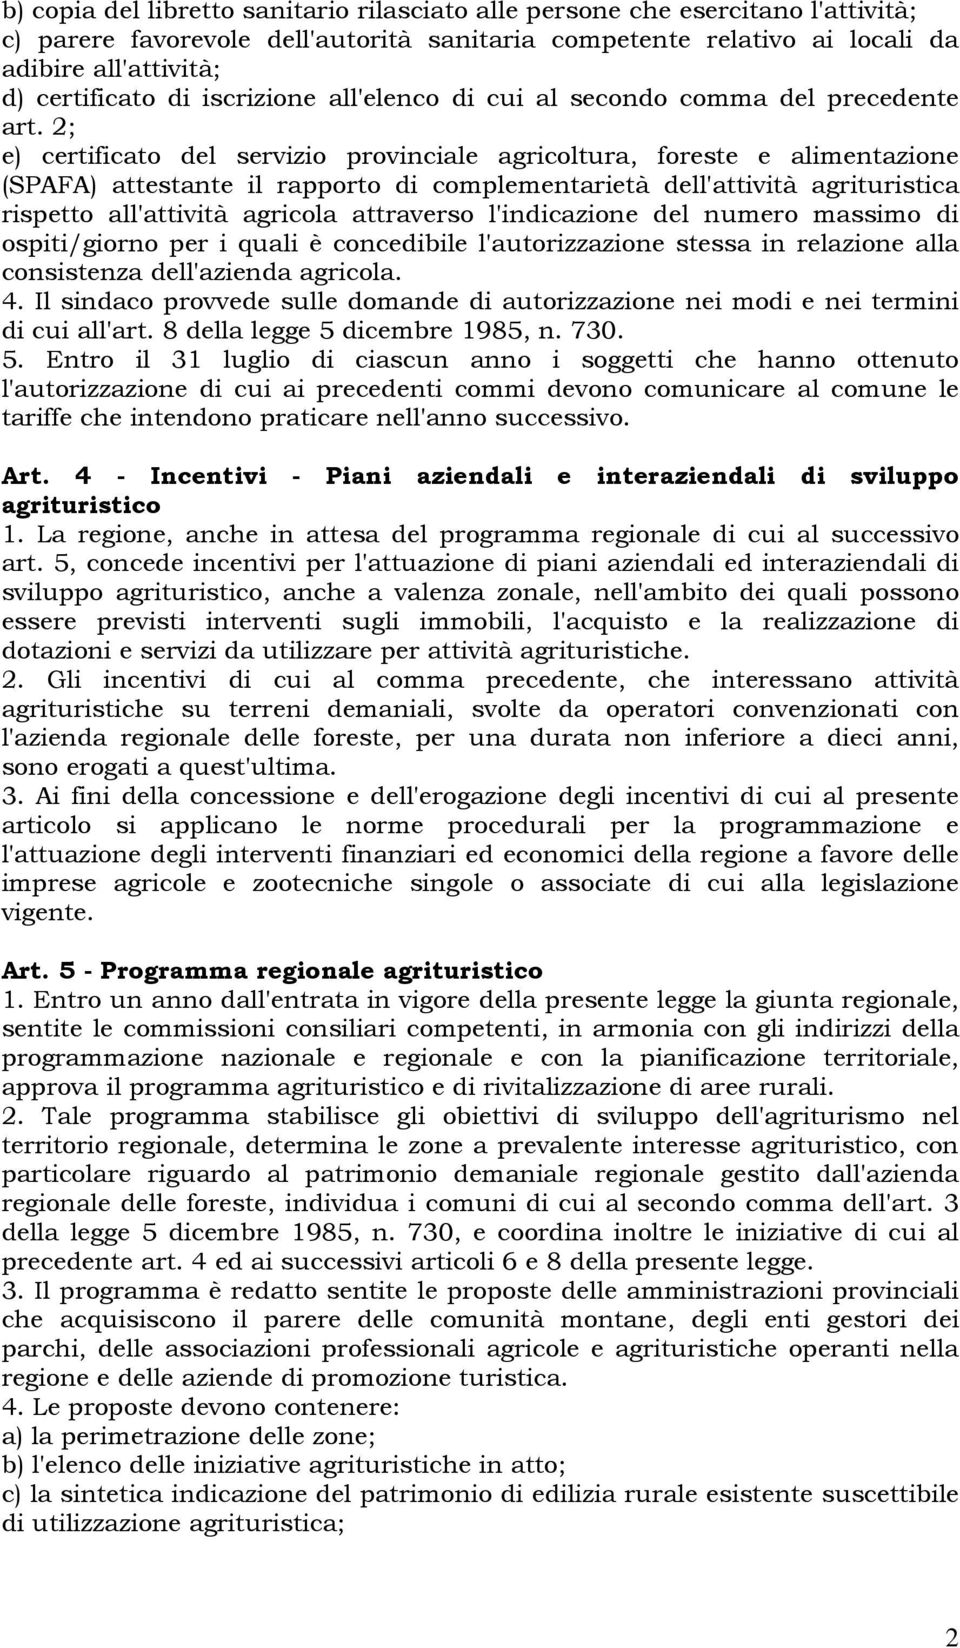 2; e) certificato del servizio provinciale agricoltura, foreste e alimentazione (SPAFA) attestante il rapporto di complementarietà dell'attività agrituristica rispetto all'attività agricola